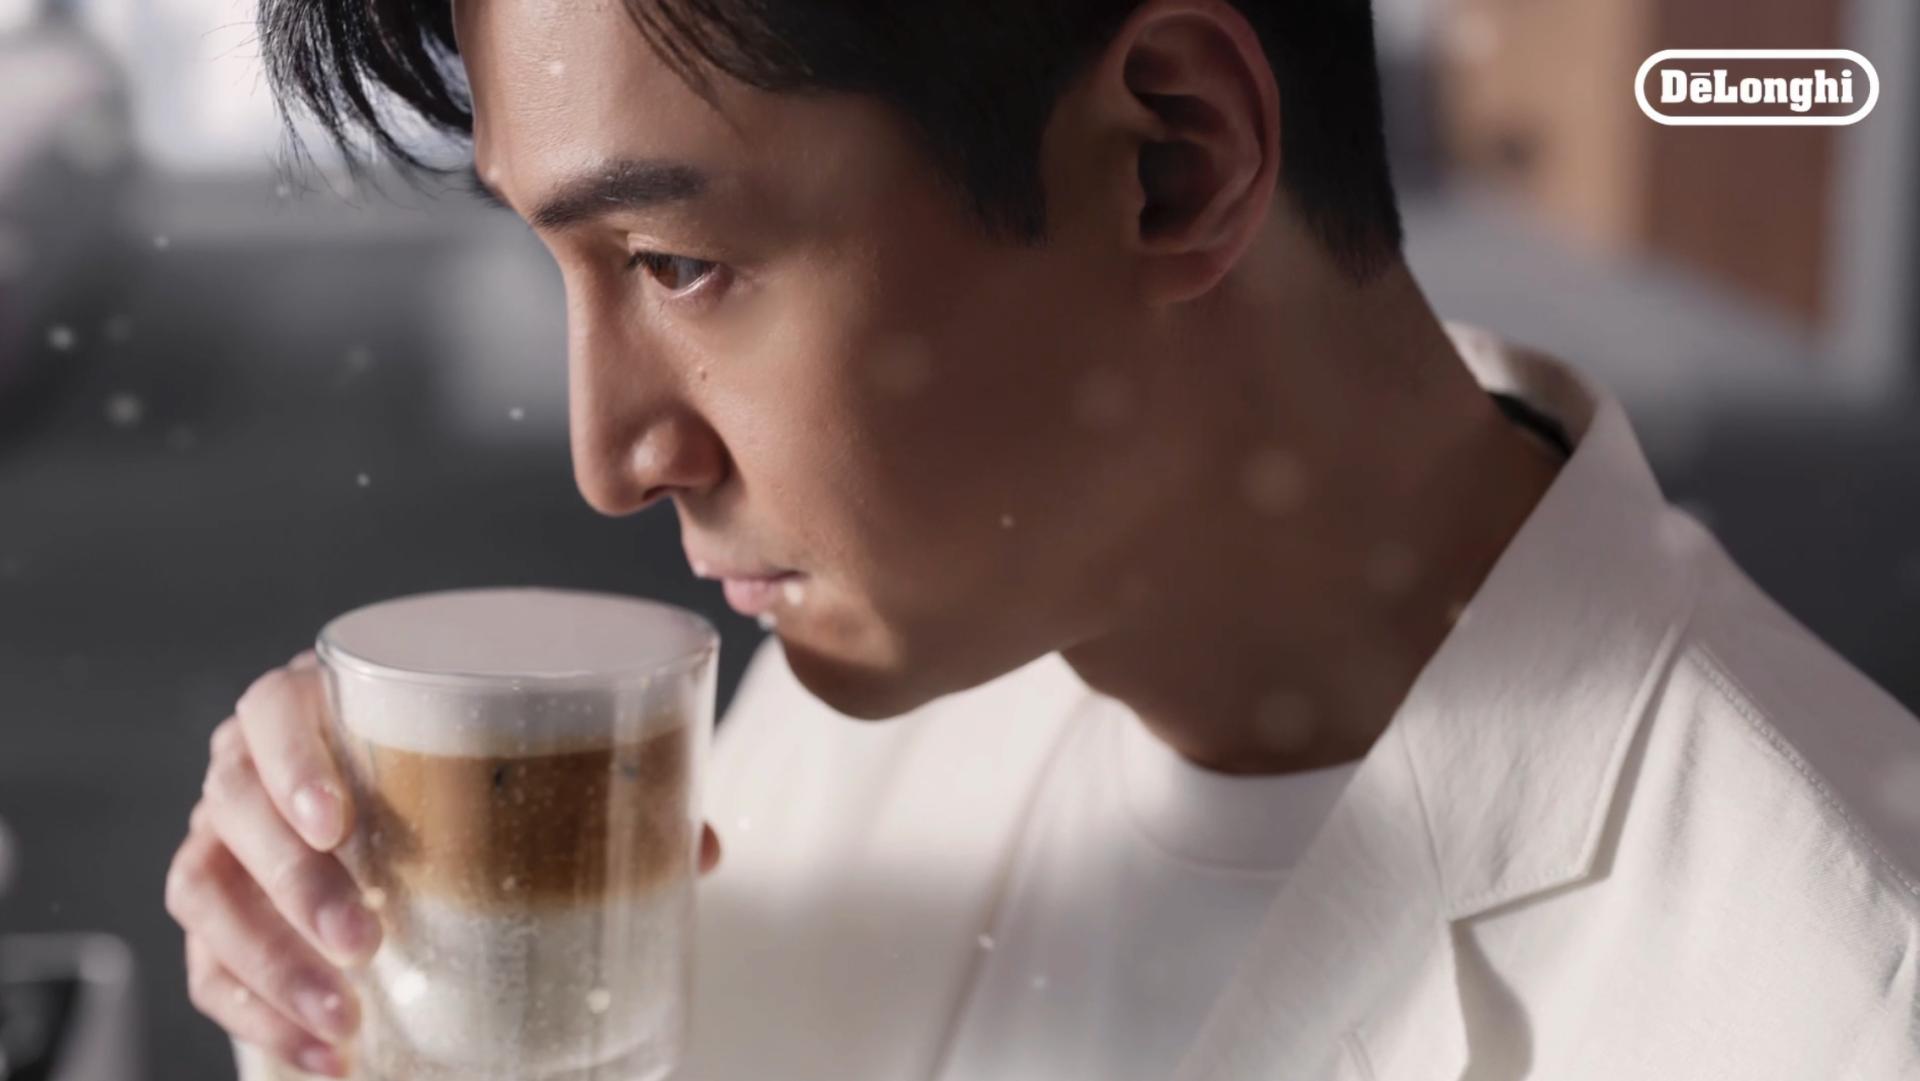 德龙咖啡机 x 胡歌 广告片 导演版